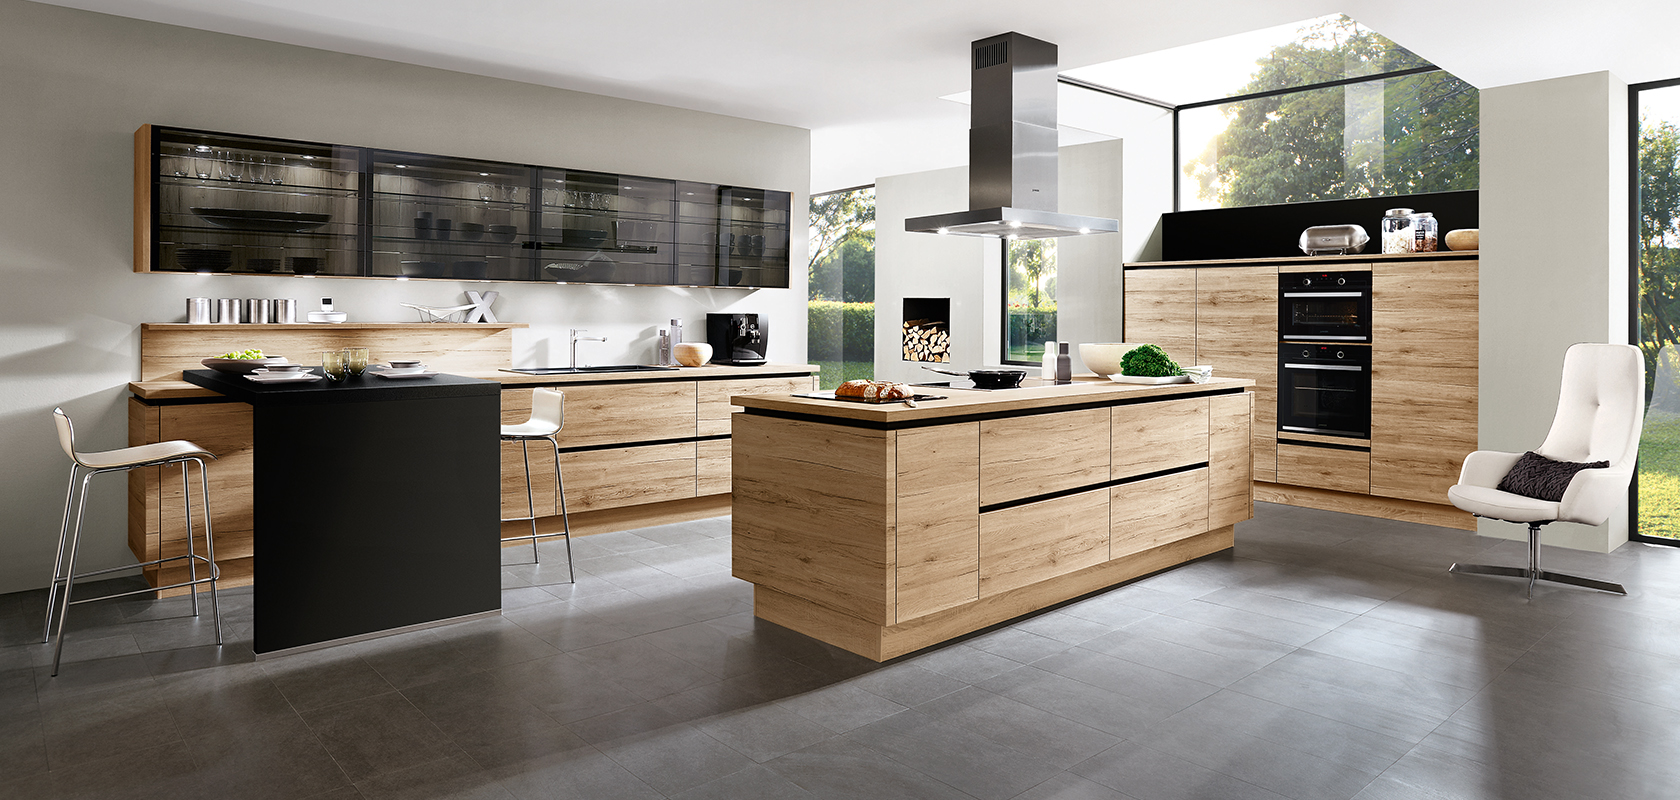 Design moderno dell'interno della cucina con elettrodomestici neri eleganti, armadi in legno e un'isola centrale con un'estetica minimalista e abbondante luce naturale.